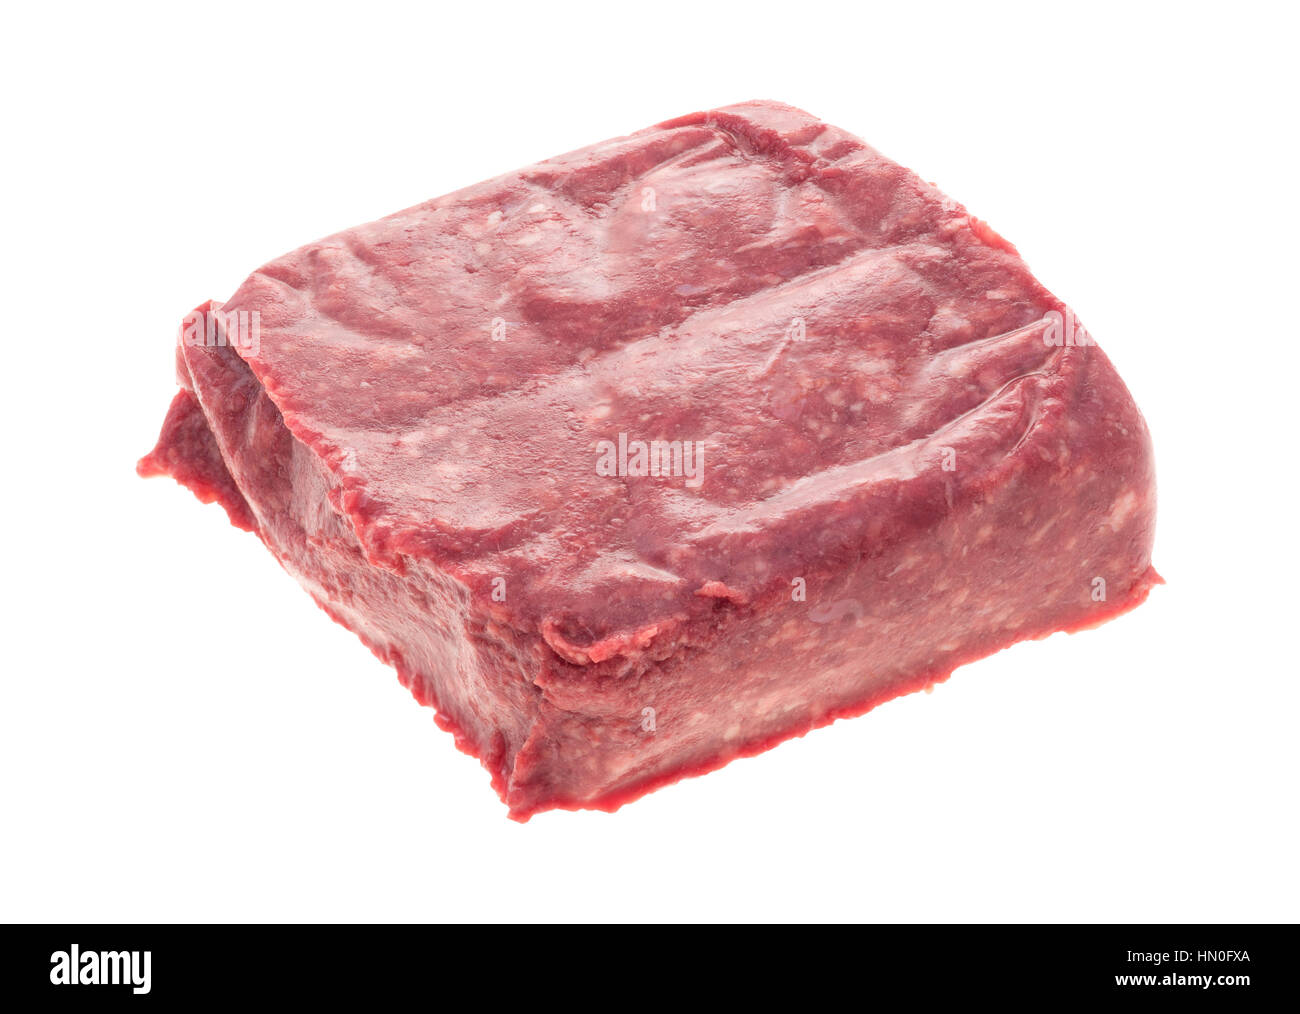 Una porzione della massa magra carni bovine confezionate isolato su uno sfondo bianco. Foto Stock